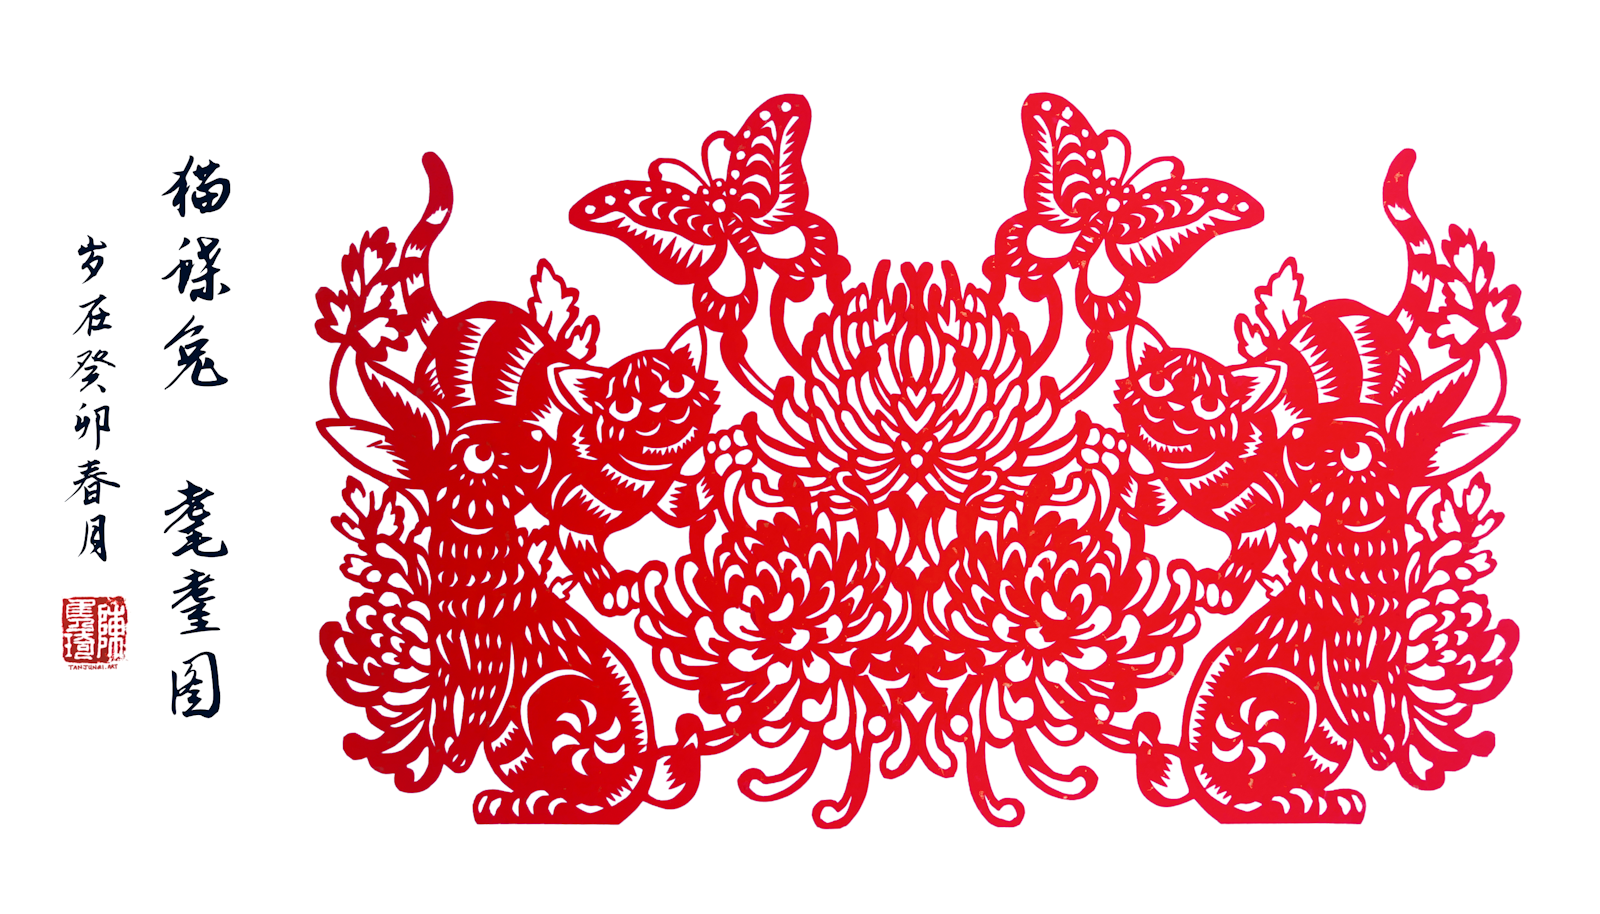 对称的剪纸作品，描绘的是站在花丛中的两只兔子和两只小猫咪仰望着空中飞舞的蝴蝶。